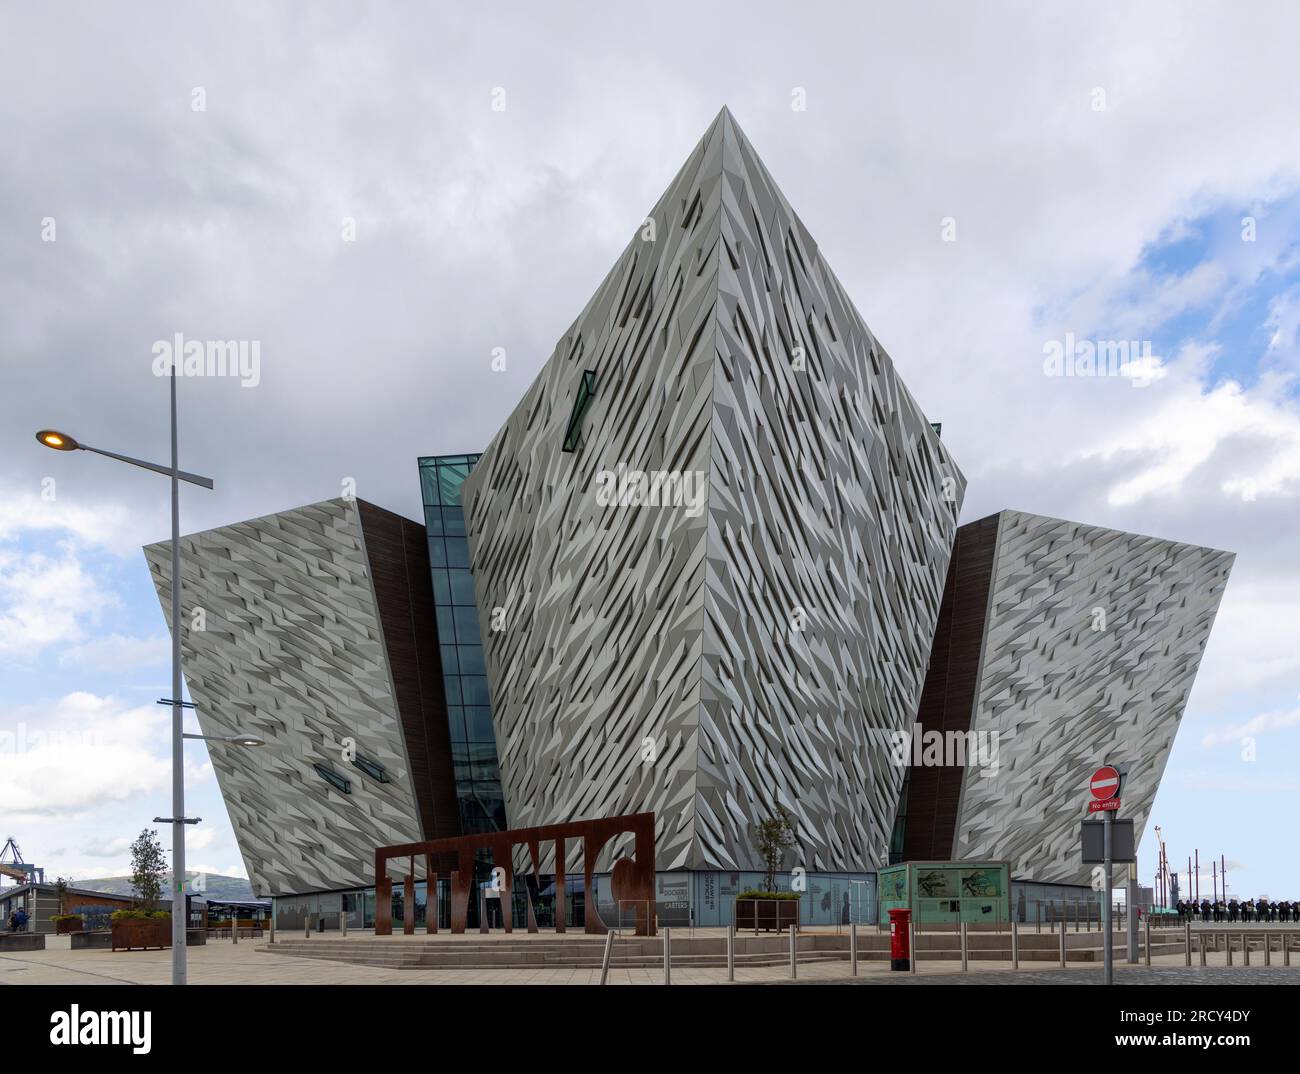 Edificio Titanic, visto desde el frente, situado en el antiguo astillero Harland & Wolff en Belfast, Irlanda del Norte. Foto de stock